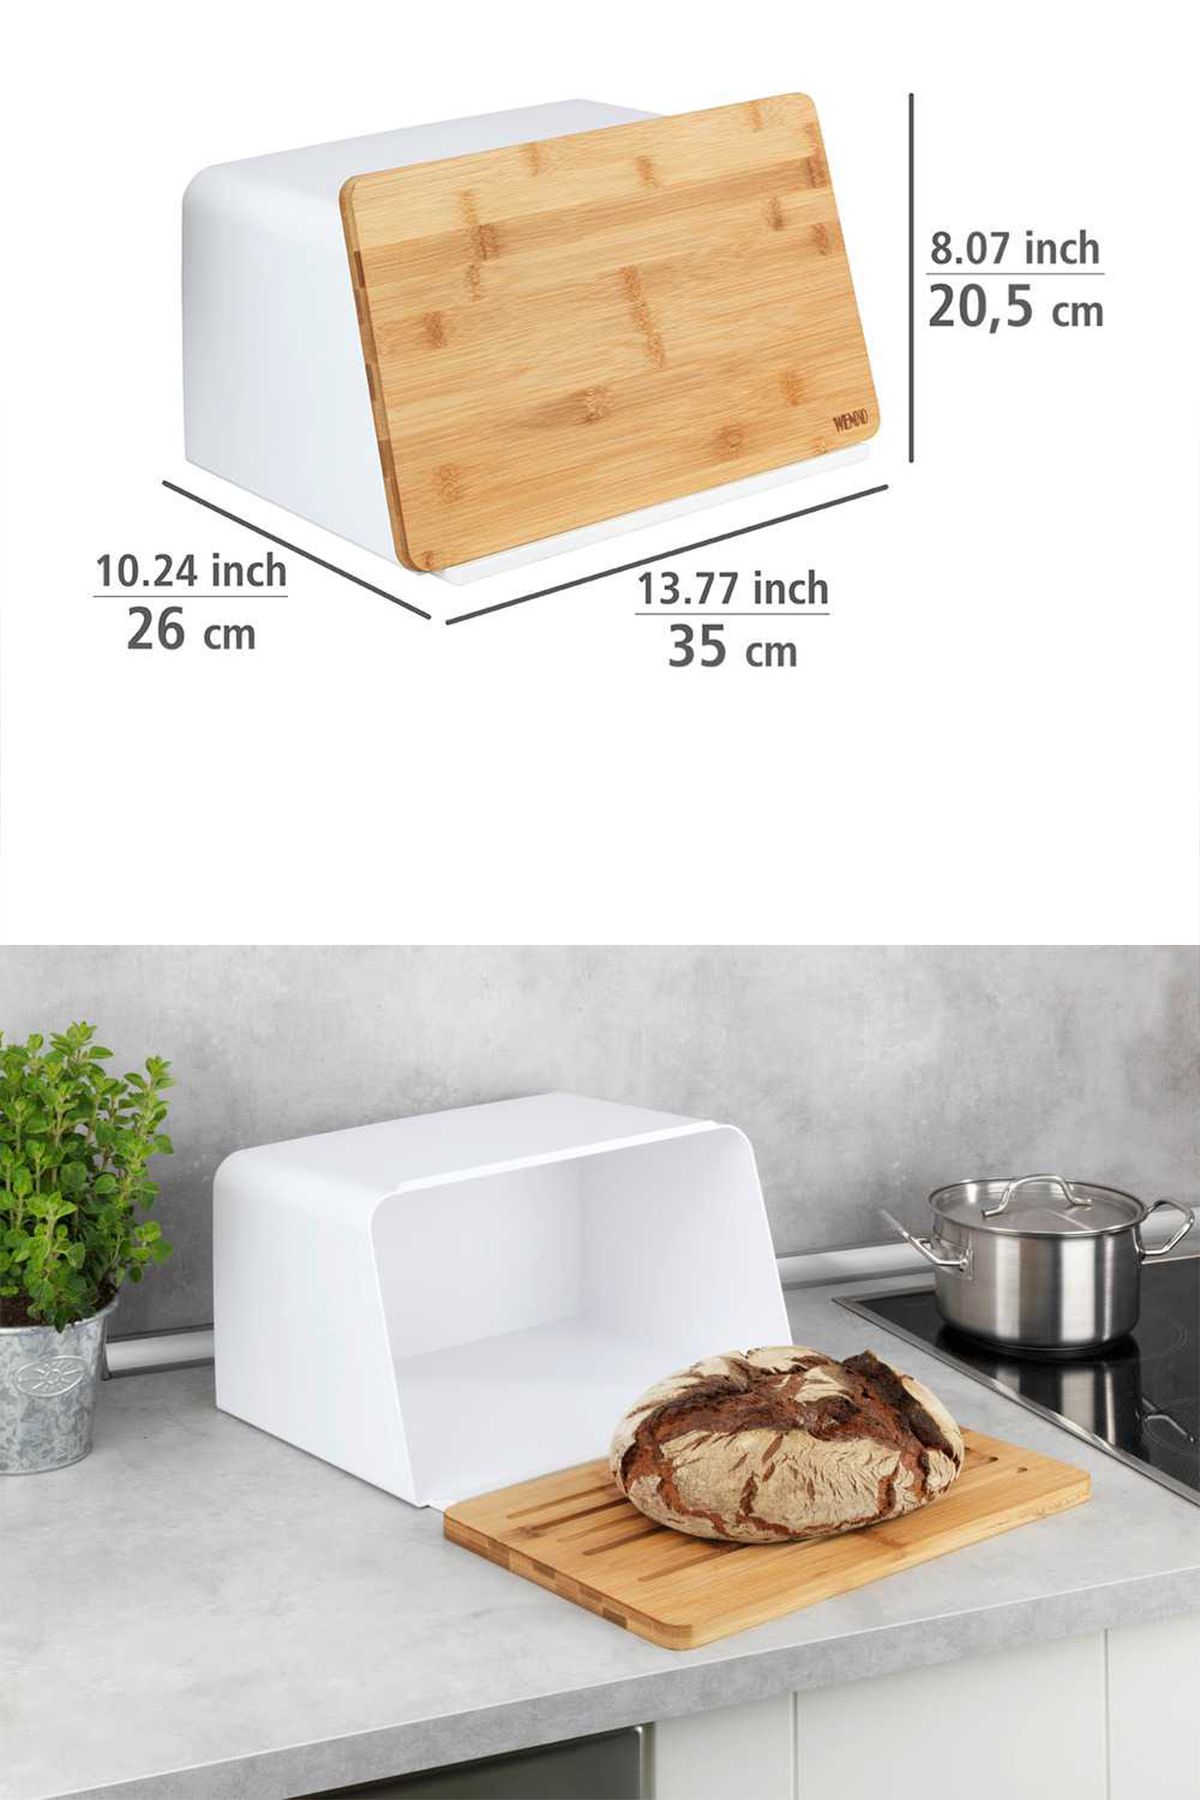 Saban WENKO Bambu tahtalı ekmek kutusu, kapak olarak entegre bambu kesme tahtalı beyaz ekmek kutusu